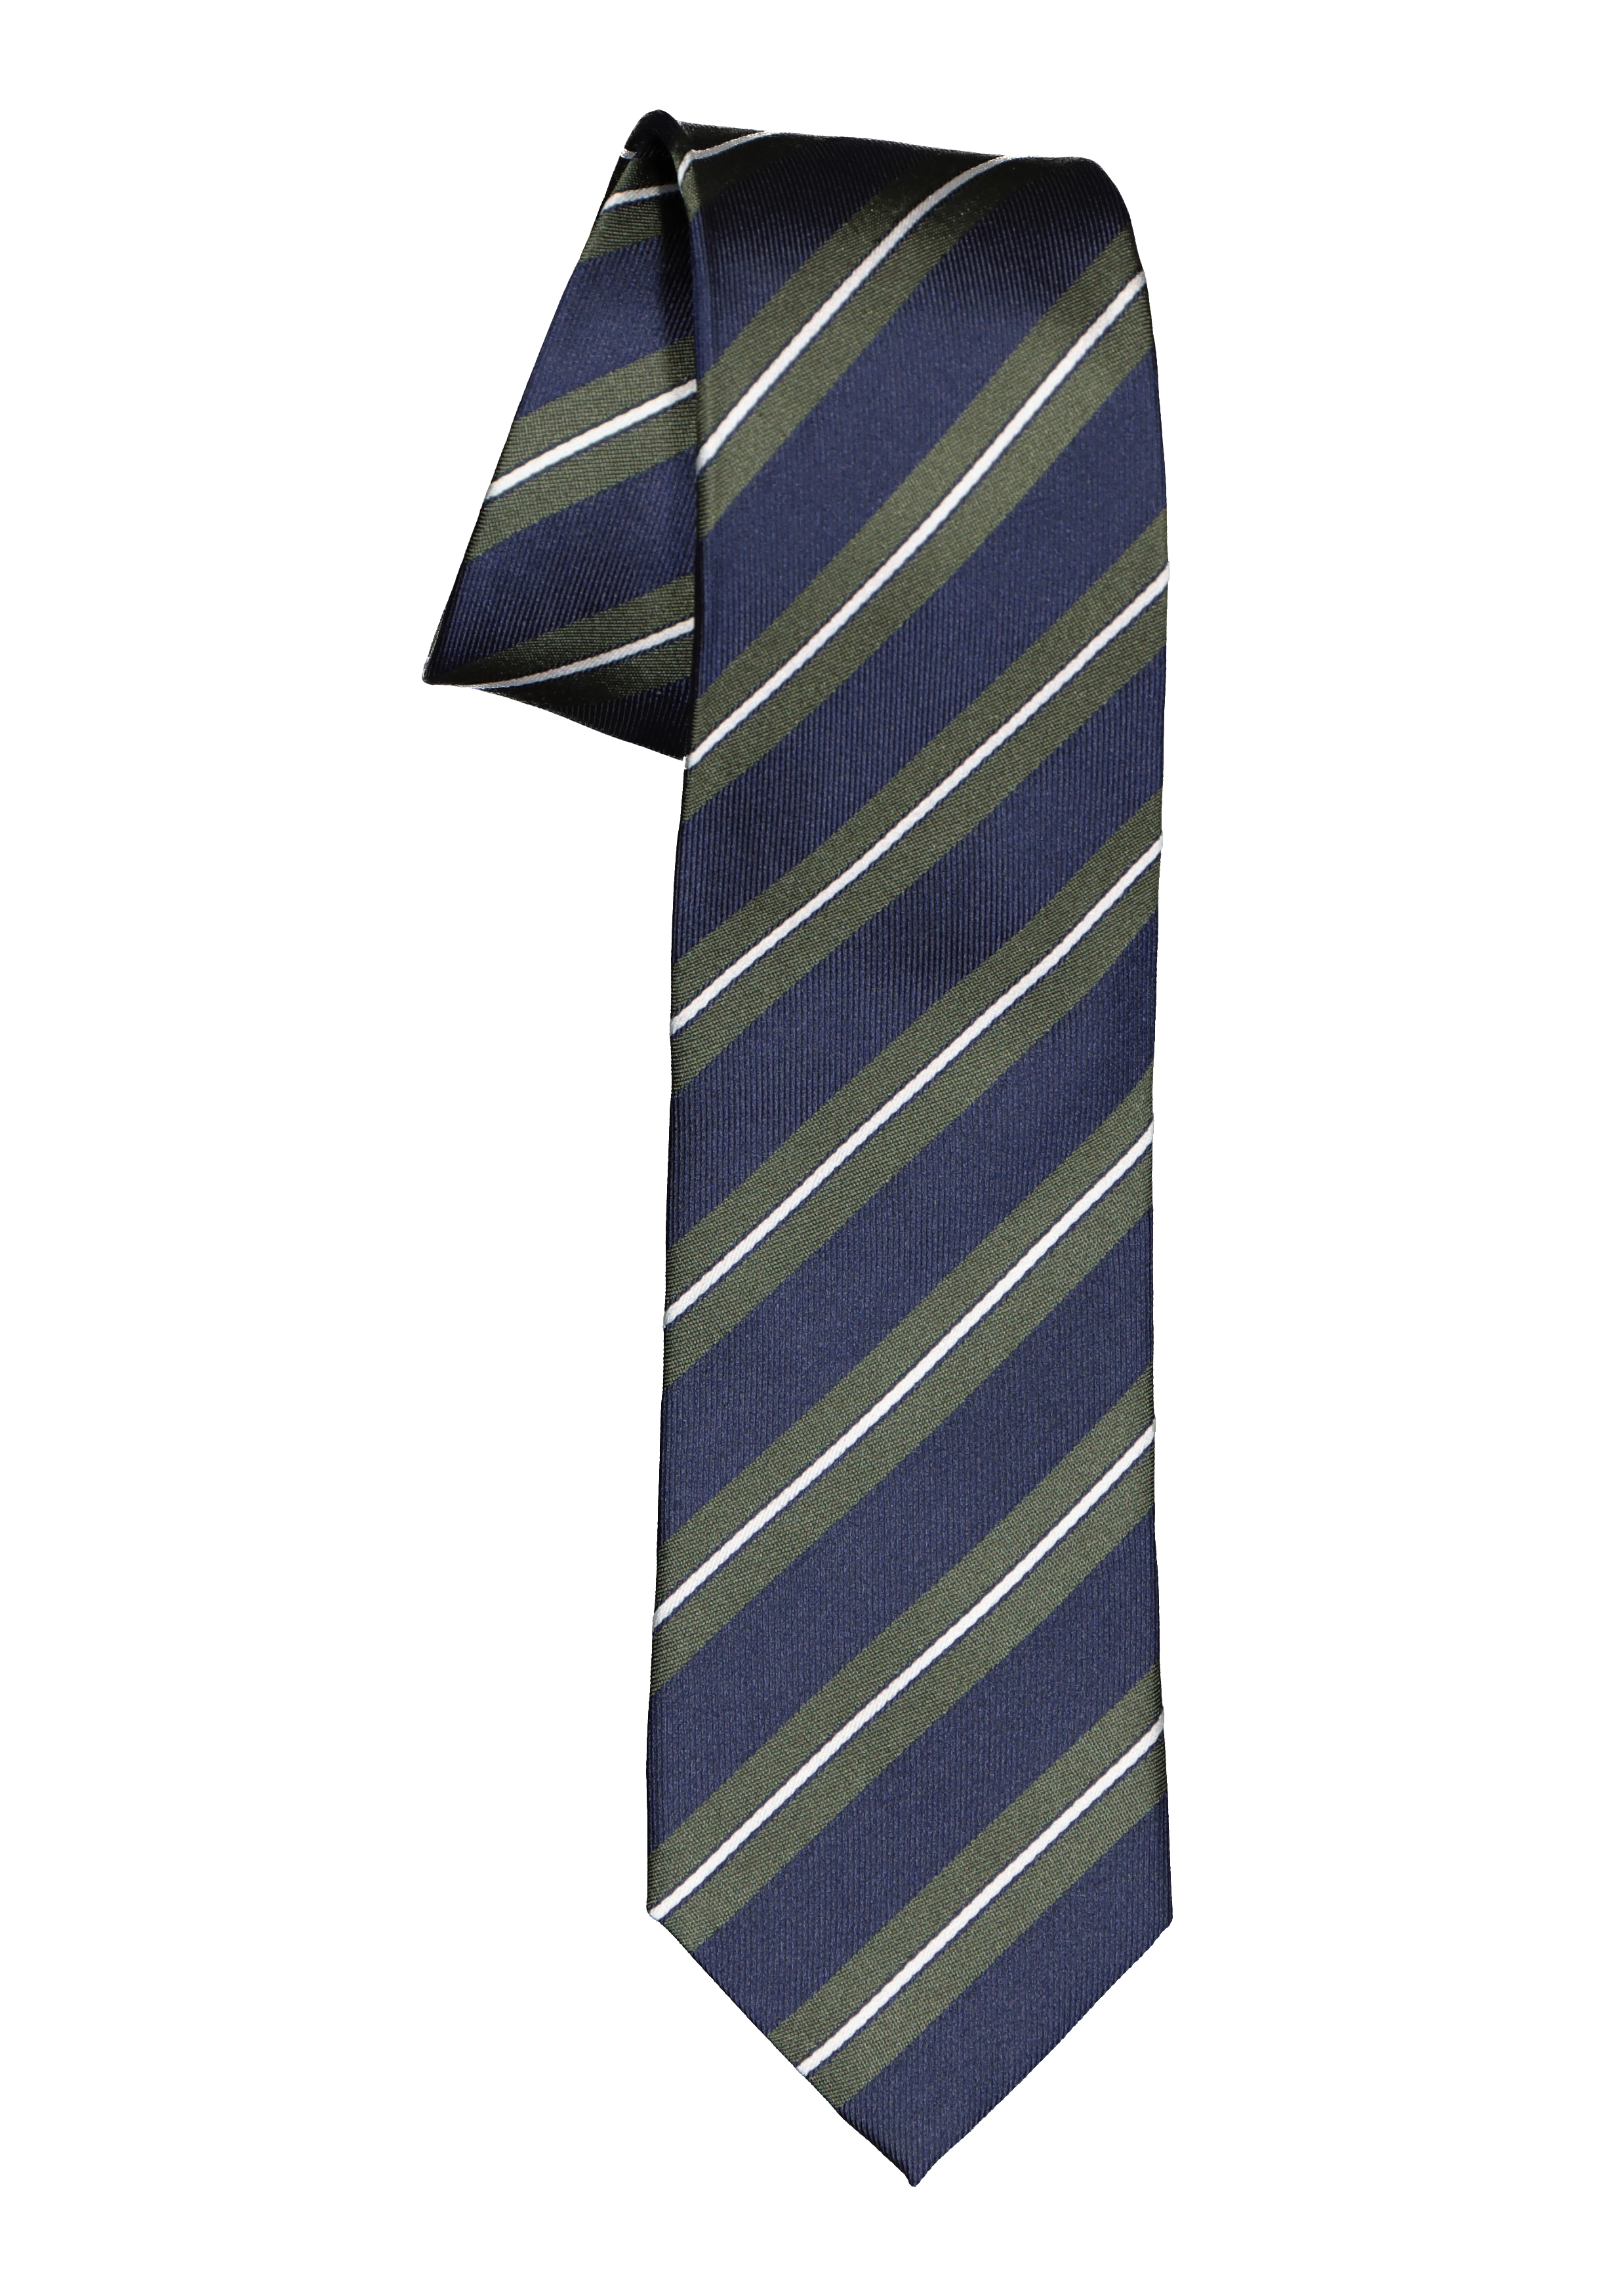 Scully wenkbrauw Heel Michaelis stropdas, zijde, blauw met groen en wit gestreept - Zomer SALE  tot 50% korting